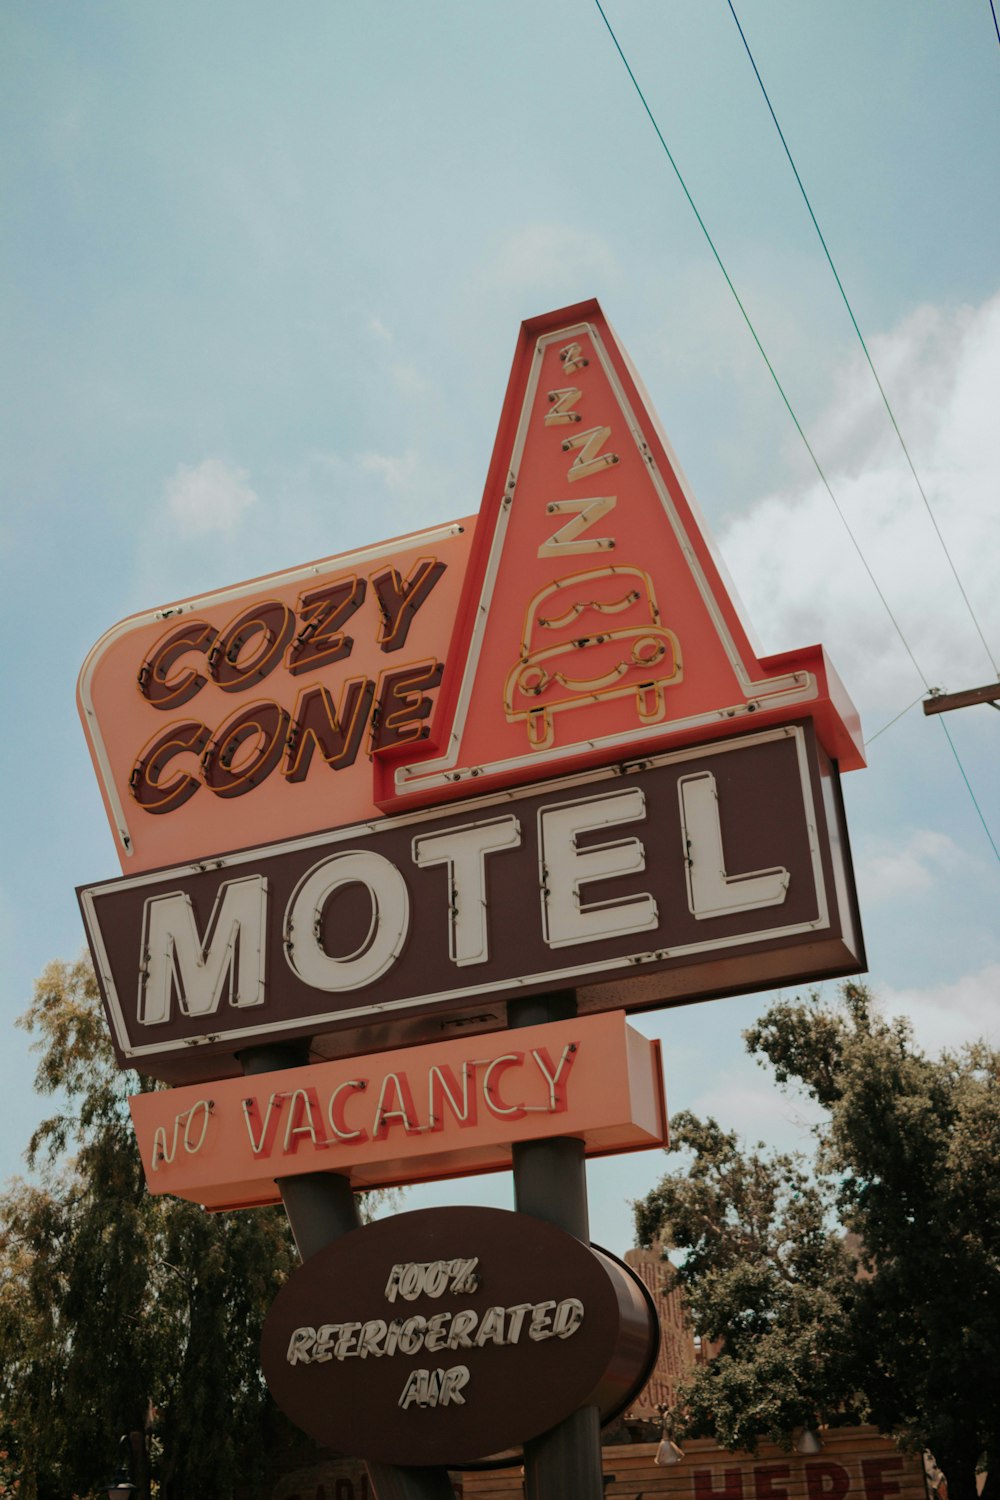 Placa de trânsito Cozy Cone Motel